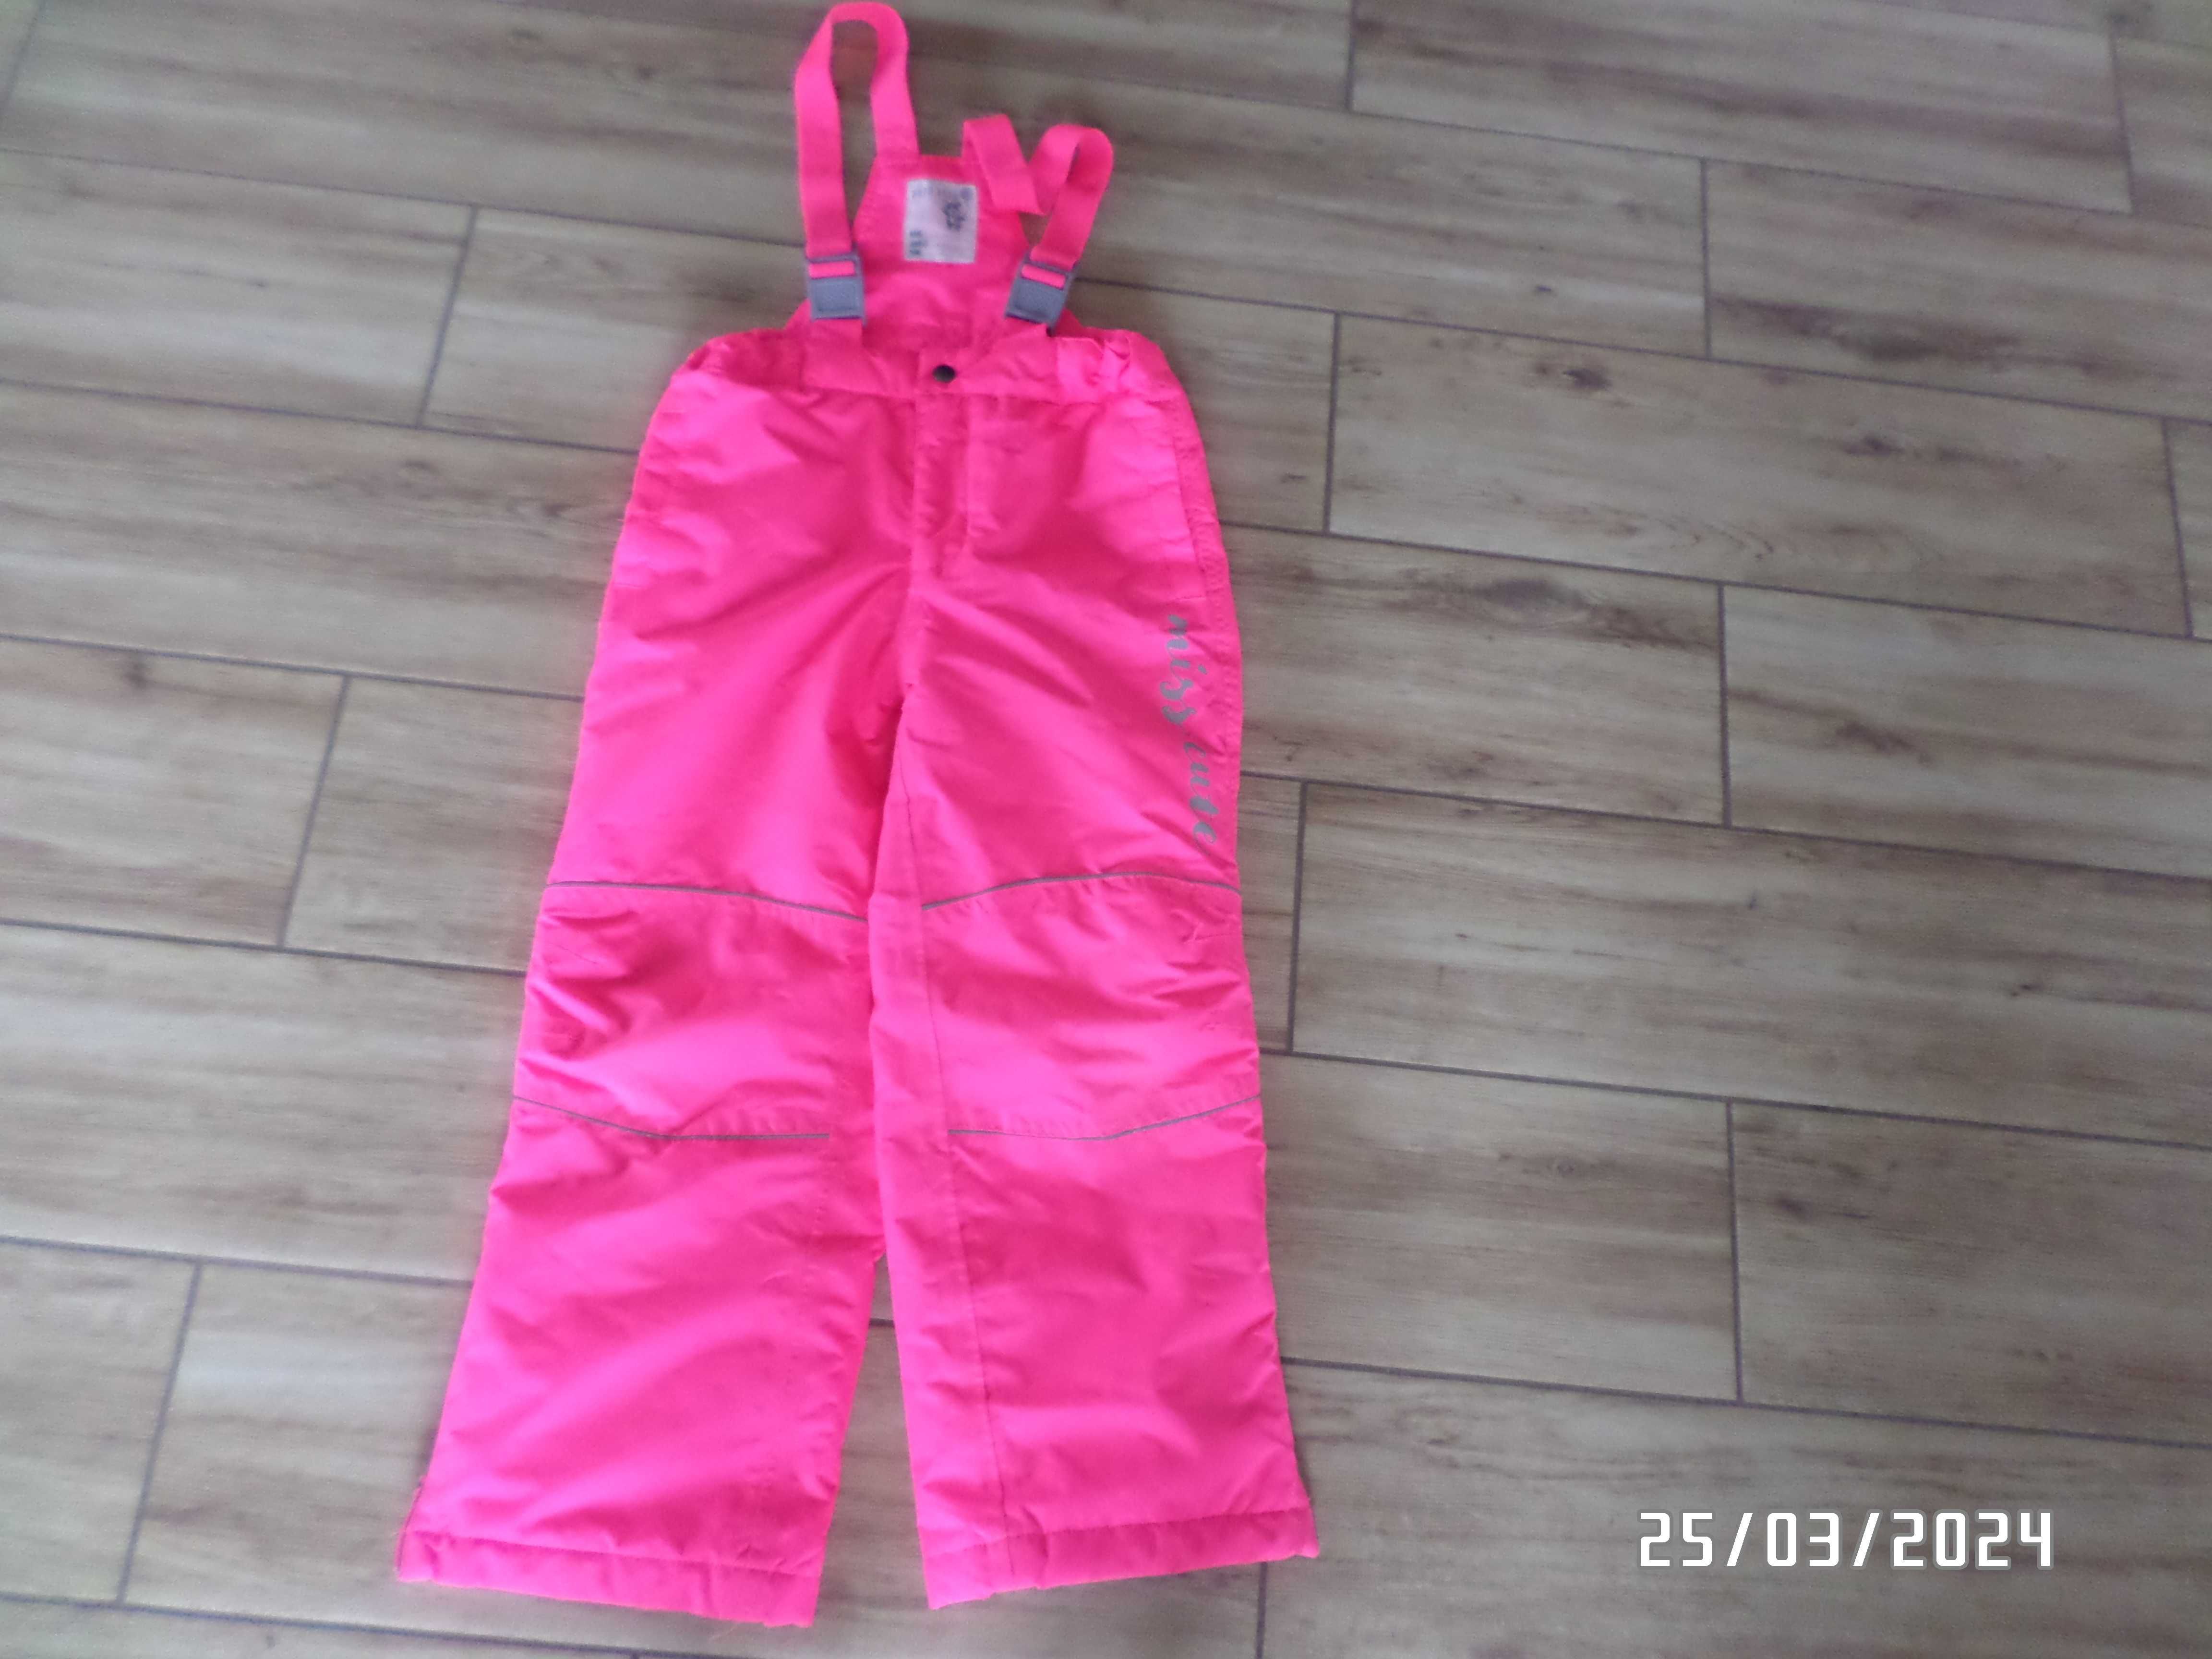 spodnie narciarskie dla dziewczynki-128cm